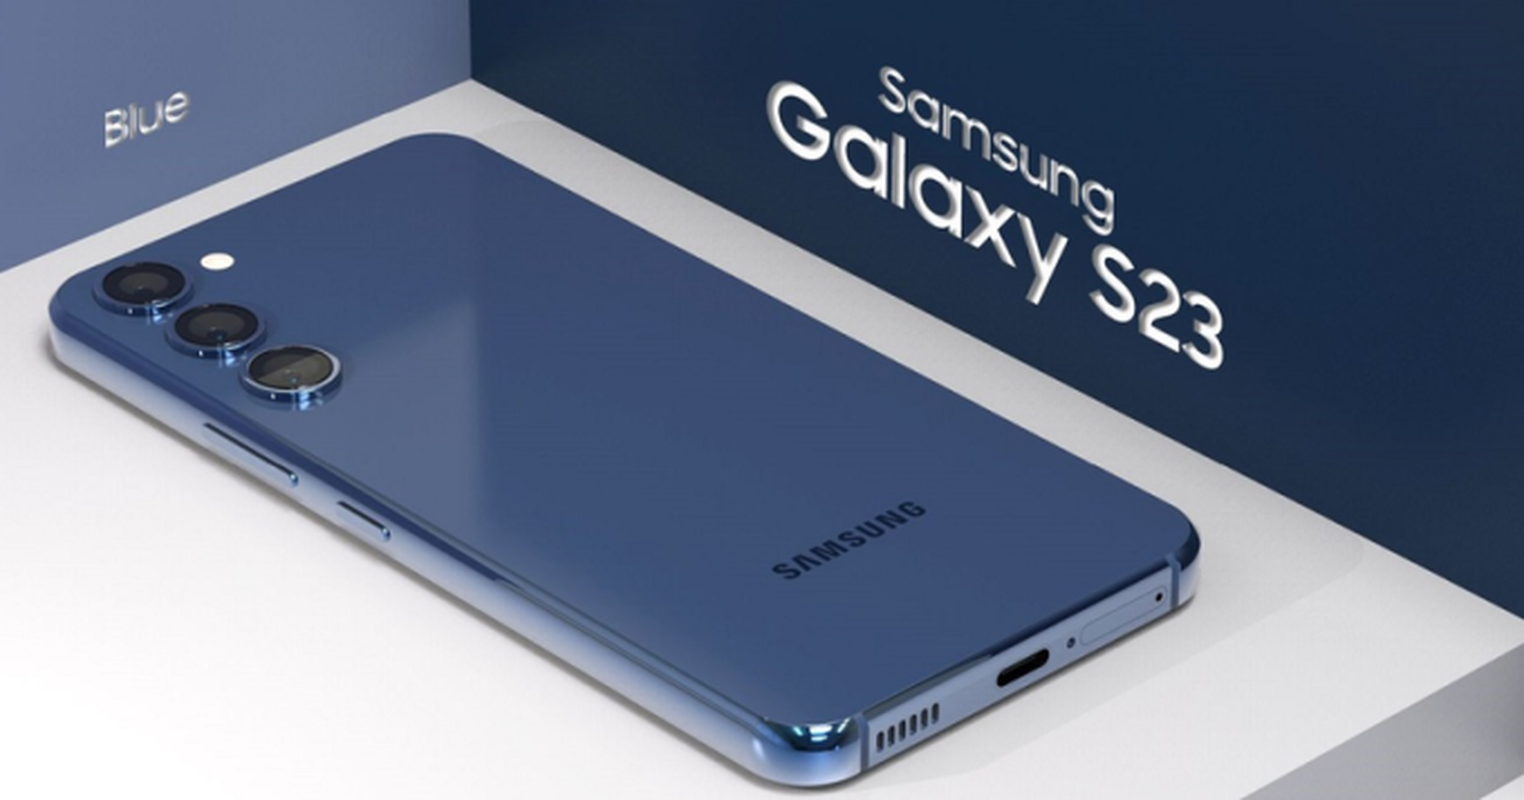 So huu cong nghe than ky nay, Samsung Galaxy S23 vuot mat iPhone 14?-Hinh-8